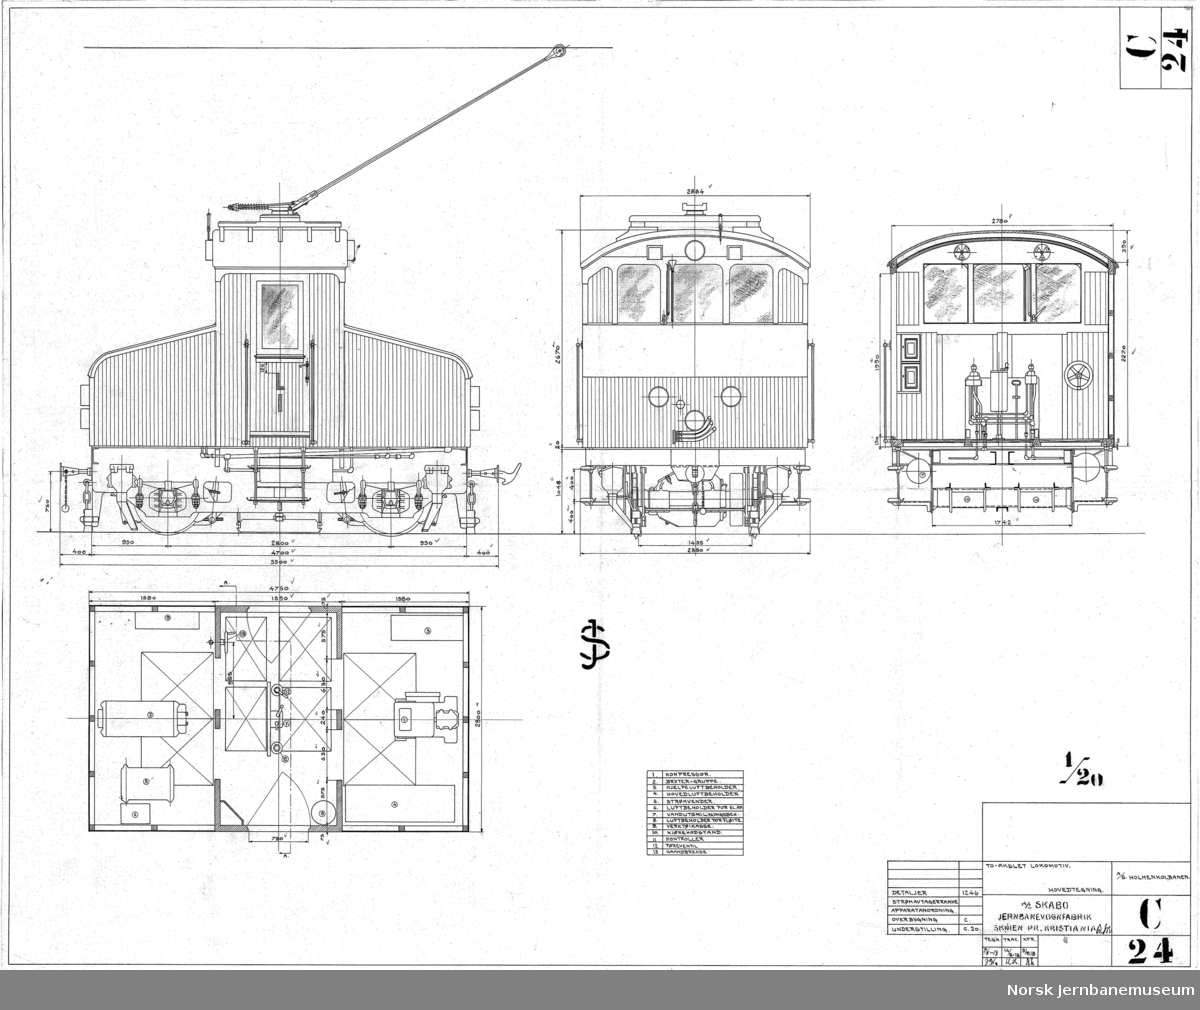 To-akslet lokomotiv, Holmenkolbanen

C024 - Hovedtegning
C022 - Understilling
C023 - Overbygning
C025 - Røranordning

C021 Motorfjærer er ikke scannet